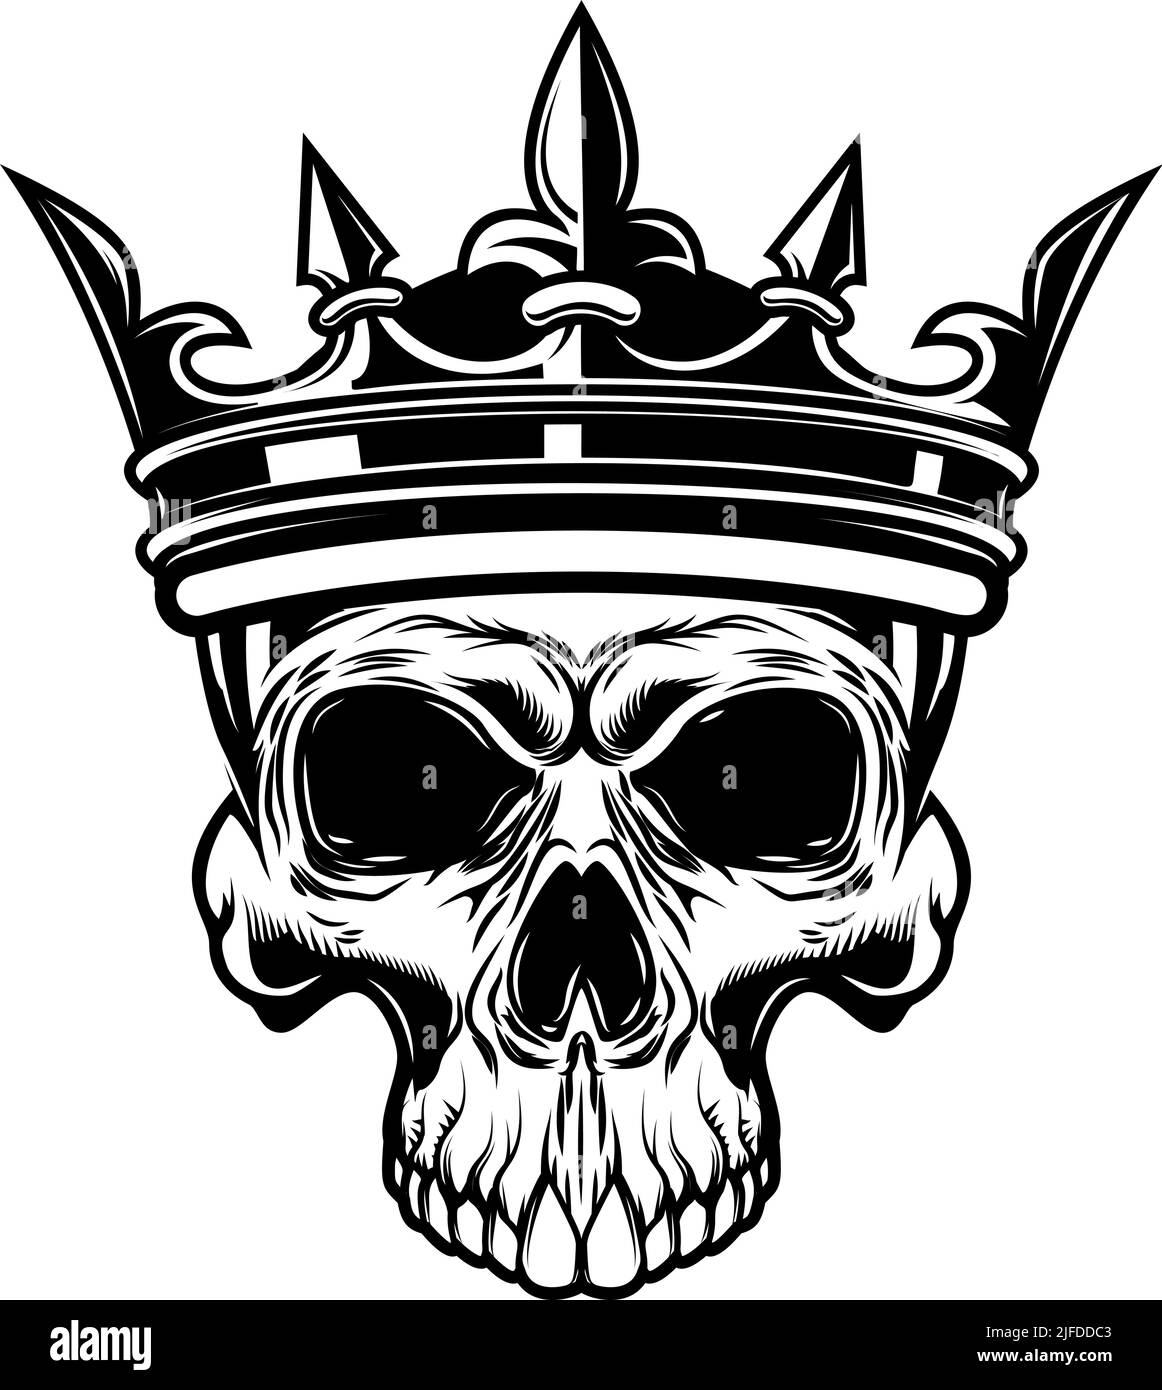 Skull with king crown. Design element for logo, label, sign, emblem. Vector illustration, Skull with king crown. Design element for logo, label, sign, Stock Vector